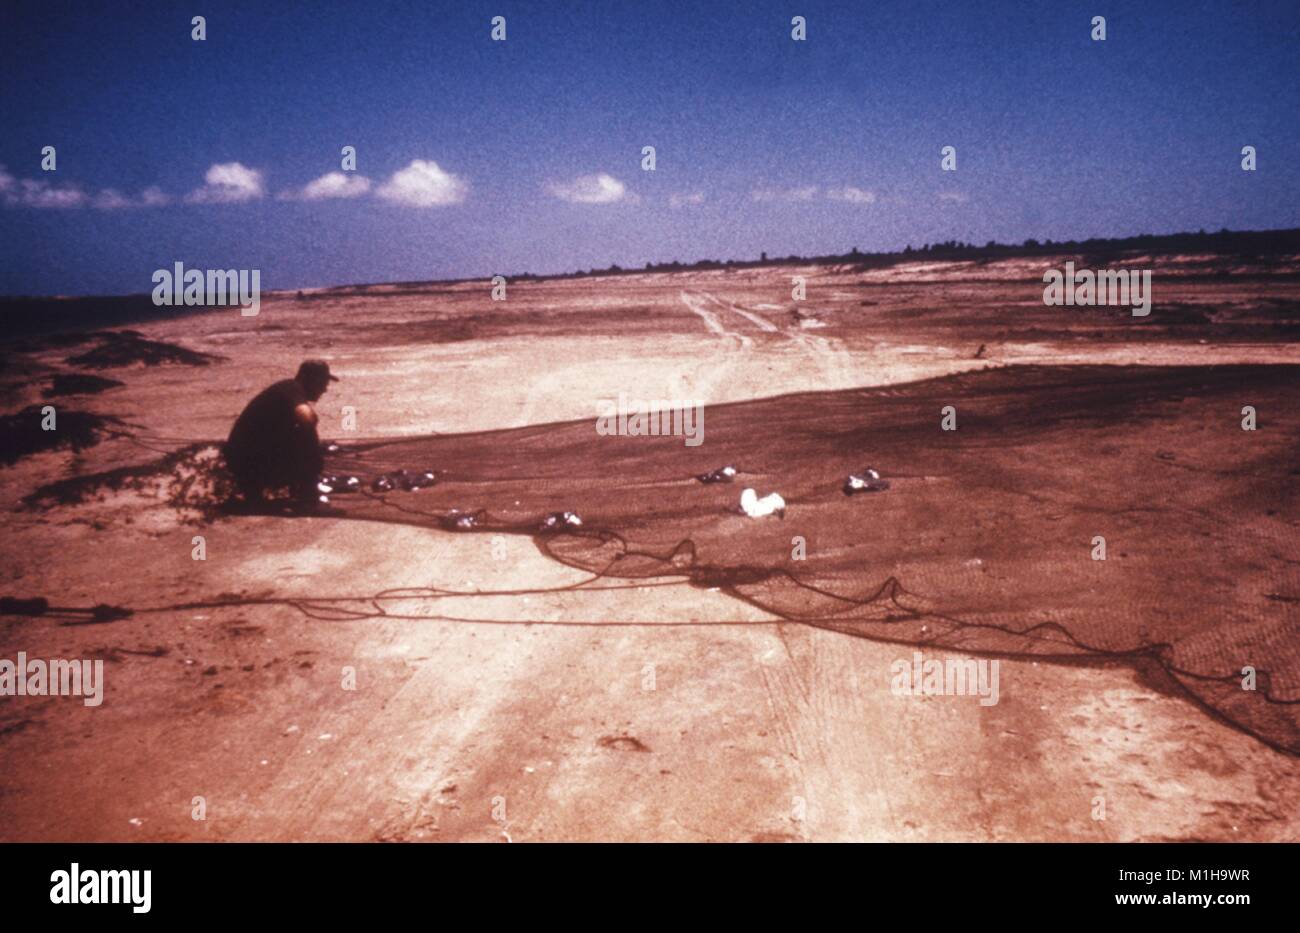 Mann in einer Küstenlandschaft kniet sich in den Sand über eine Kanone-net, dass mehrere große Vögel, die in Zentren verwendet Wird für Krankheitskontrolle (CDC) Studien über Vogel-basierte arbovirus Infektionen wie das West Nile Virus, 1974 gefangen hat. Mit freundlicher CDC. () Stockfoto